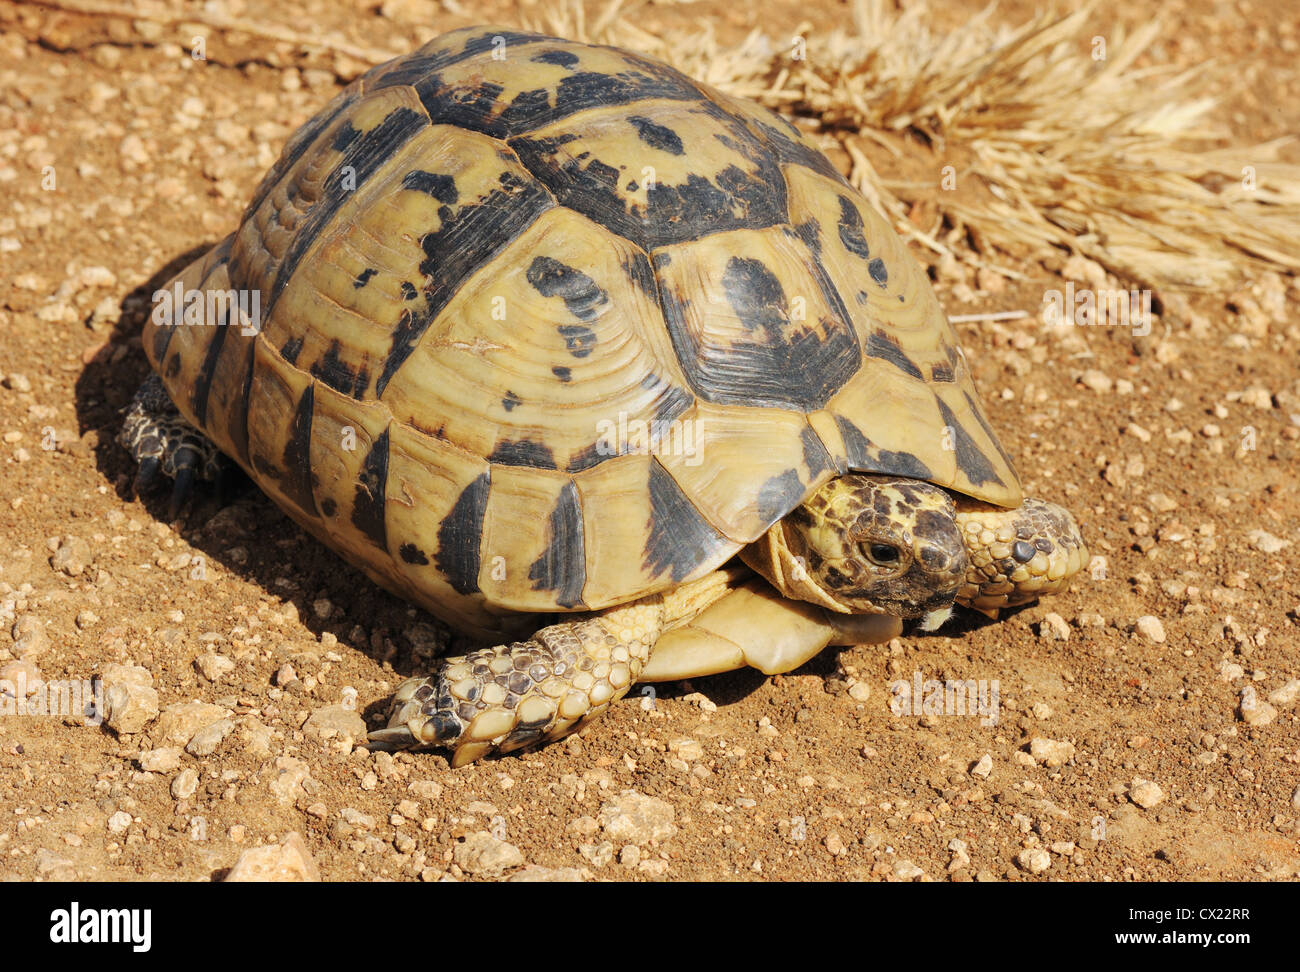 Una tortuga con un caparazón negro-amarillo arrastrándose en el suelo Foto de stock